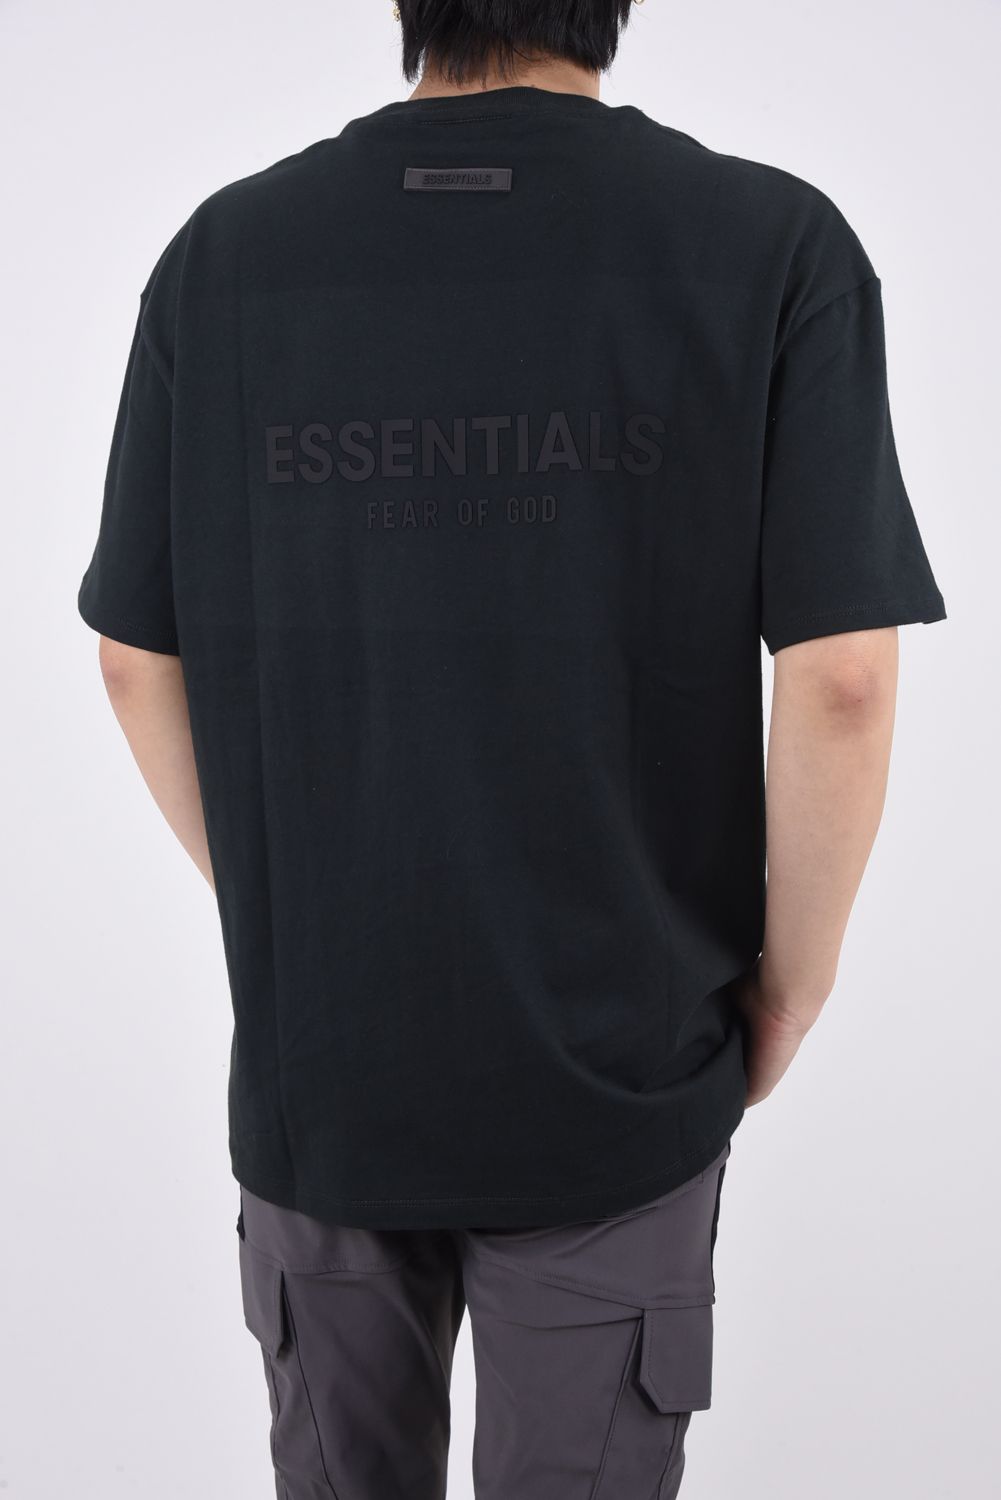 FOG ESSENTIALS バックロゴ Tシャツ ホワイト / Lサイズ